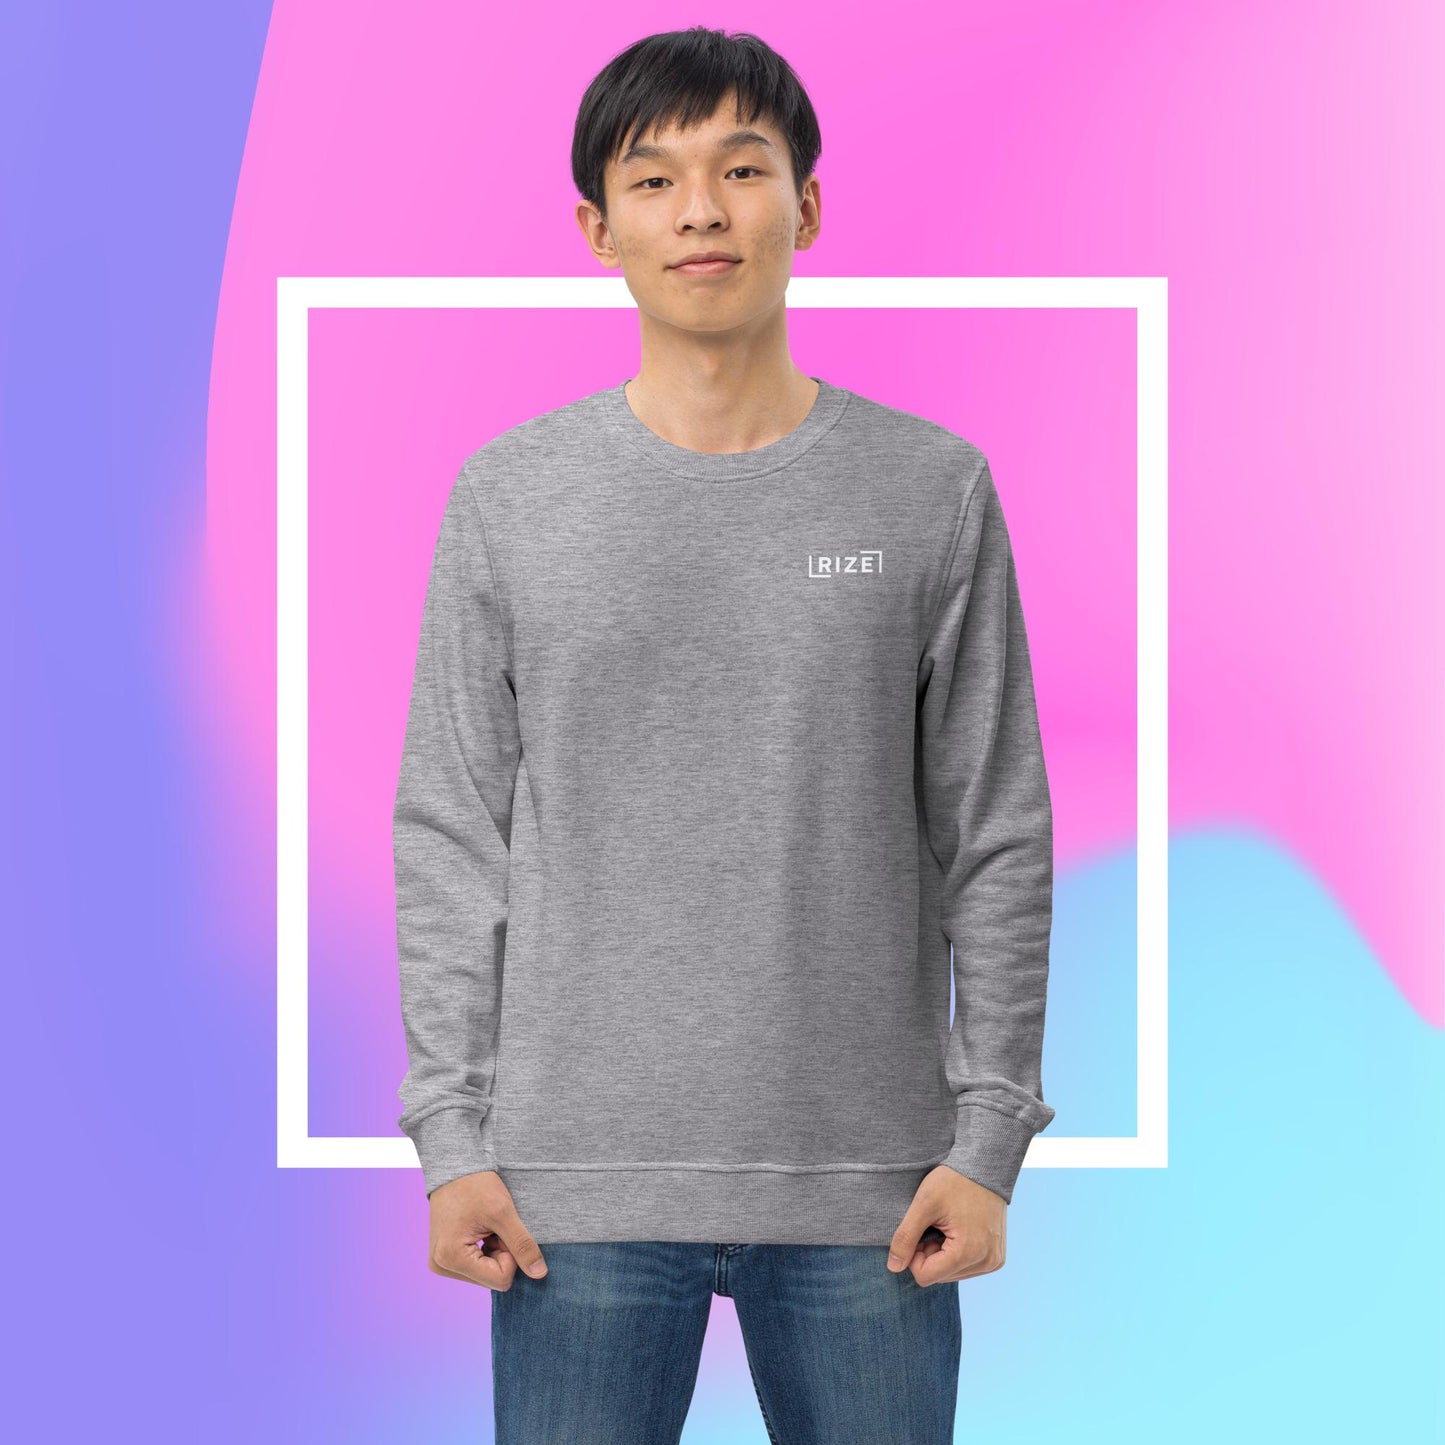 Rize Interlude Unisex sweatshirt